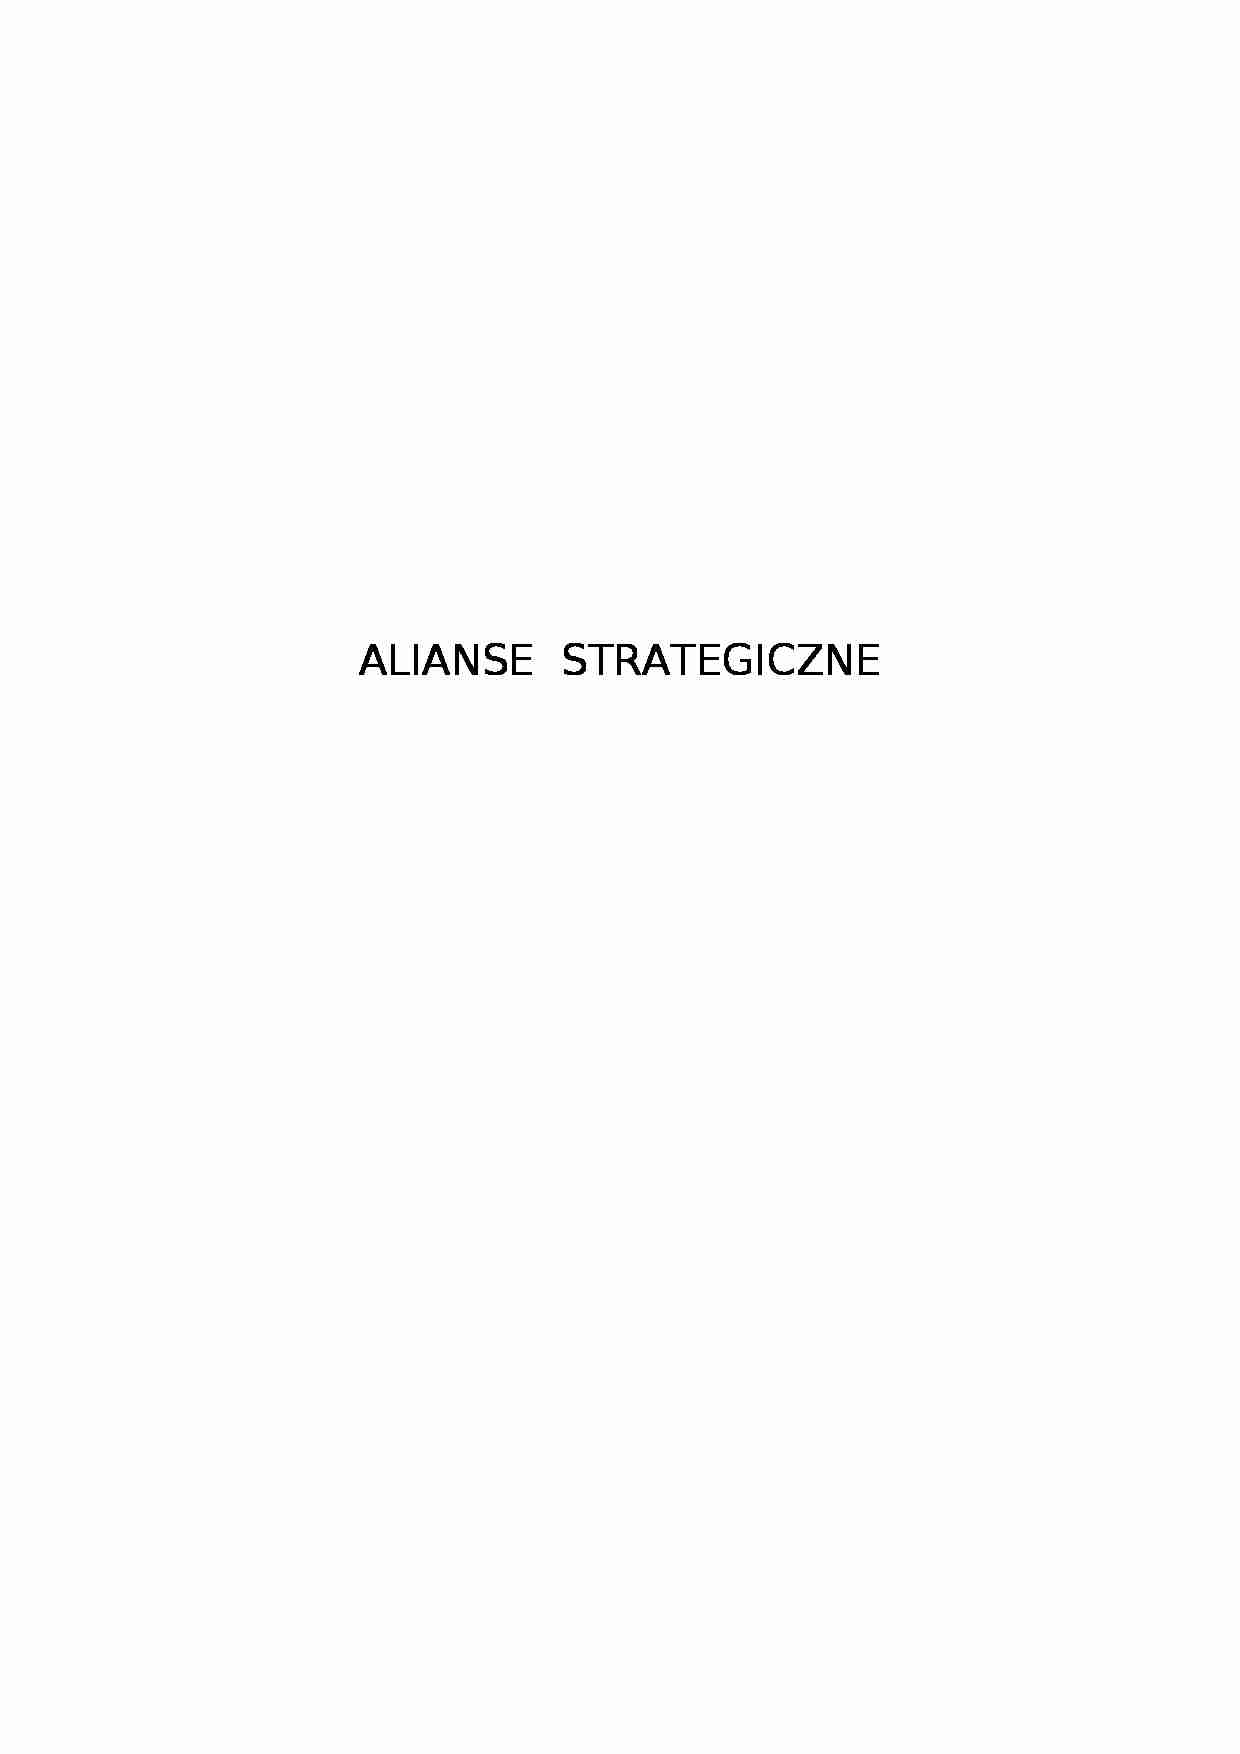  Zarządzanie strategiczne i Alianse strategiczne - strona 1